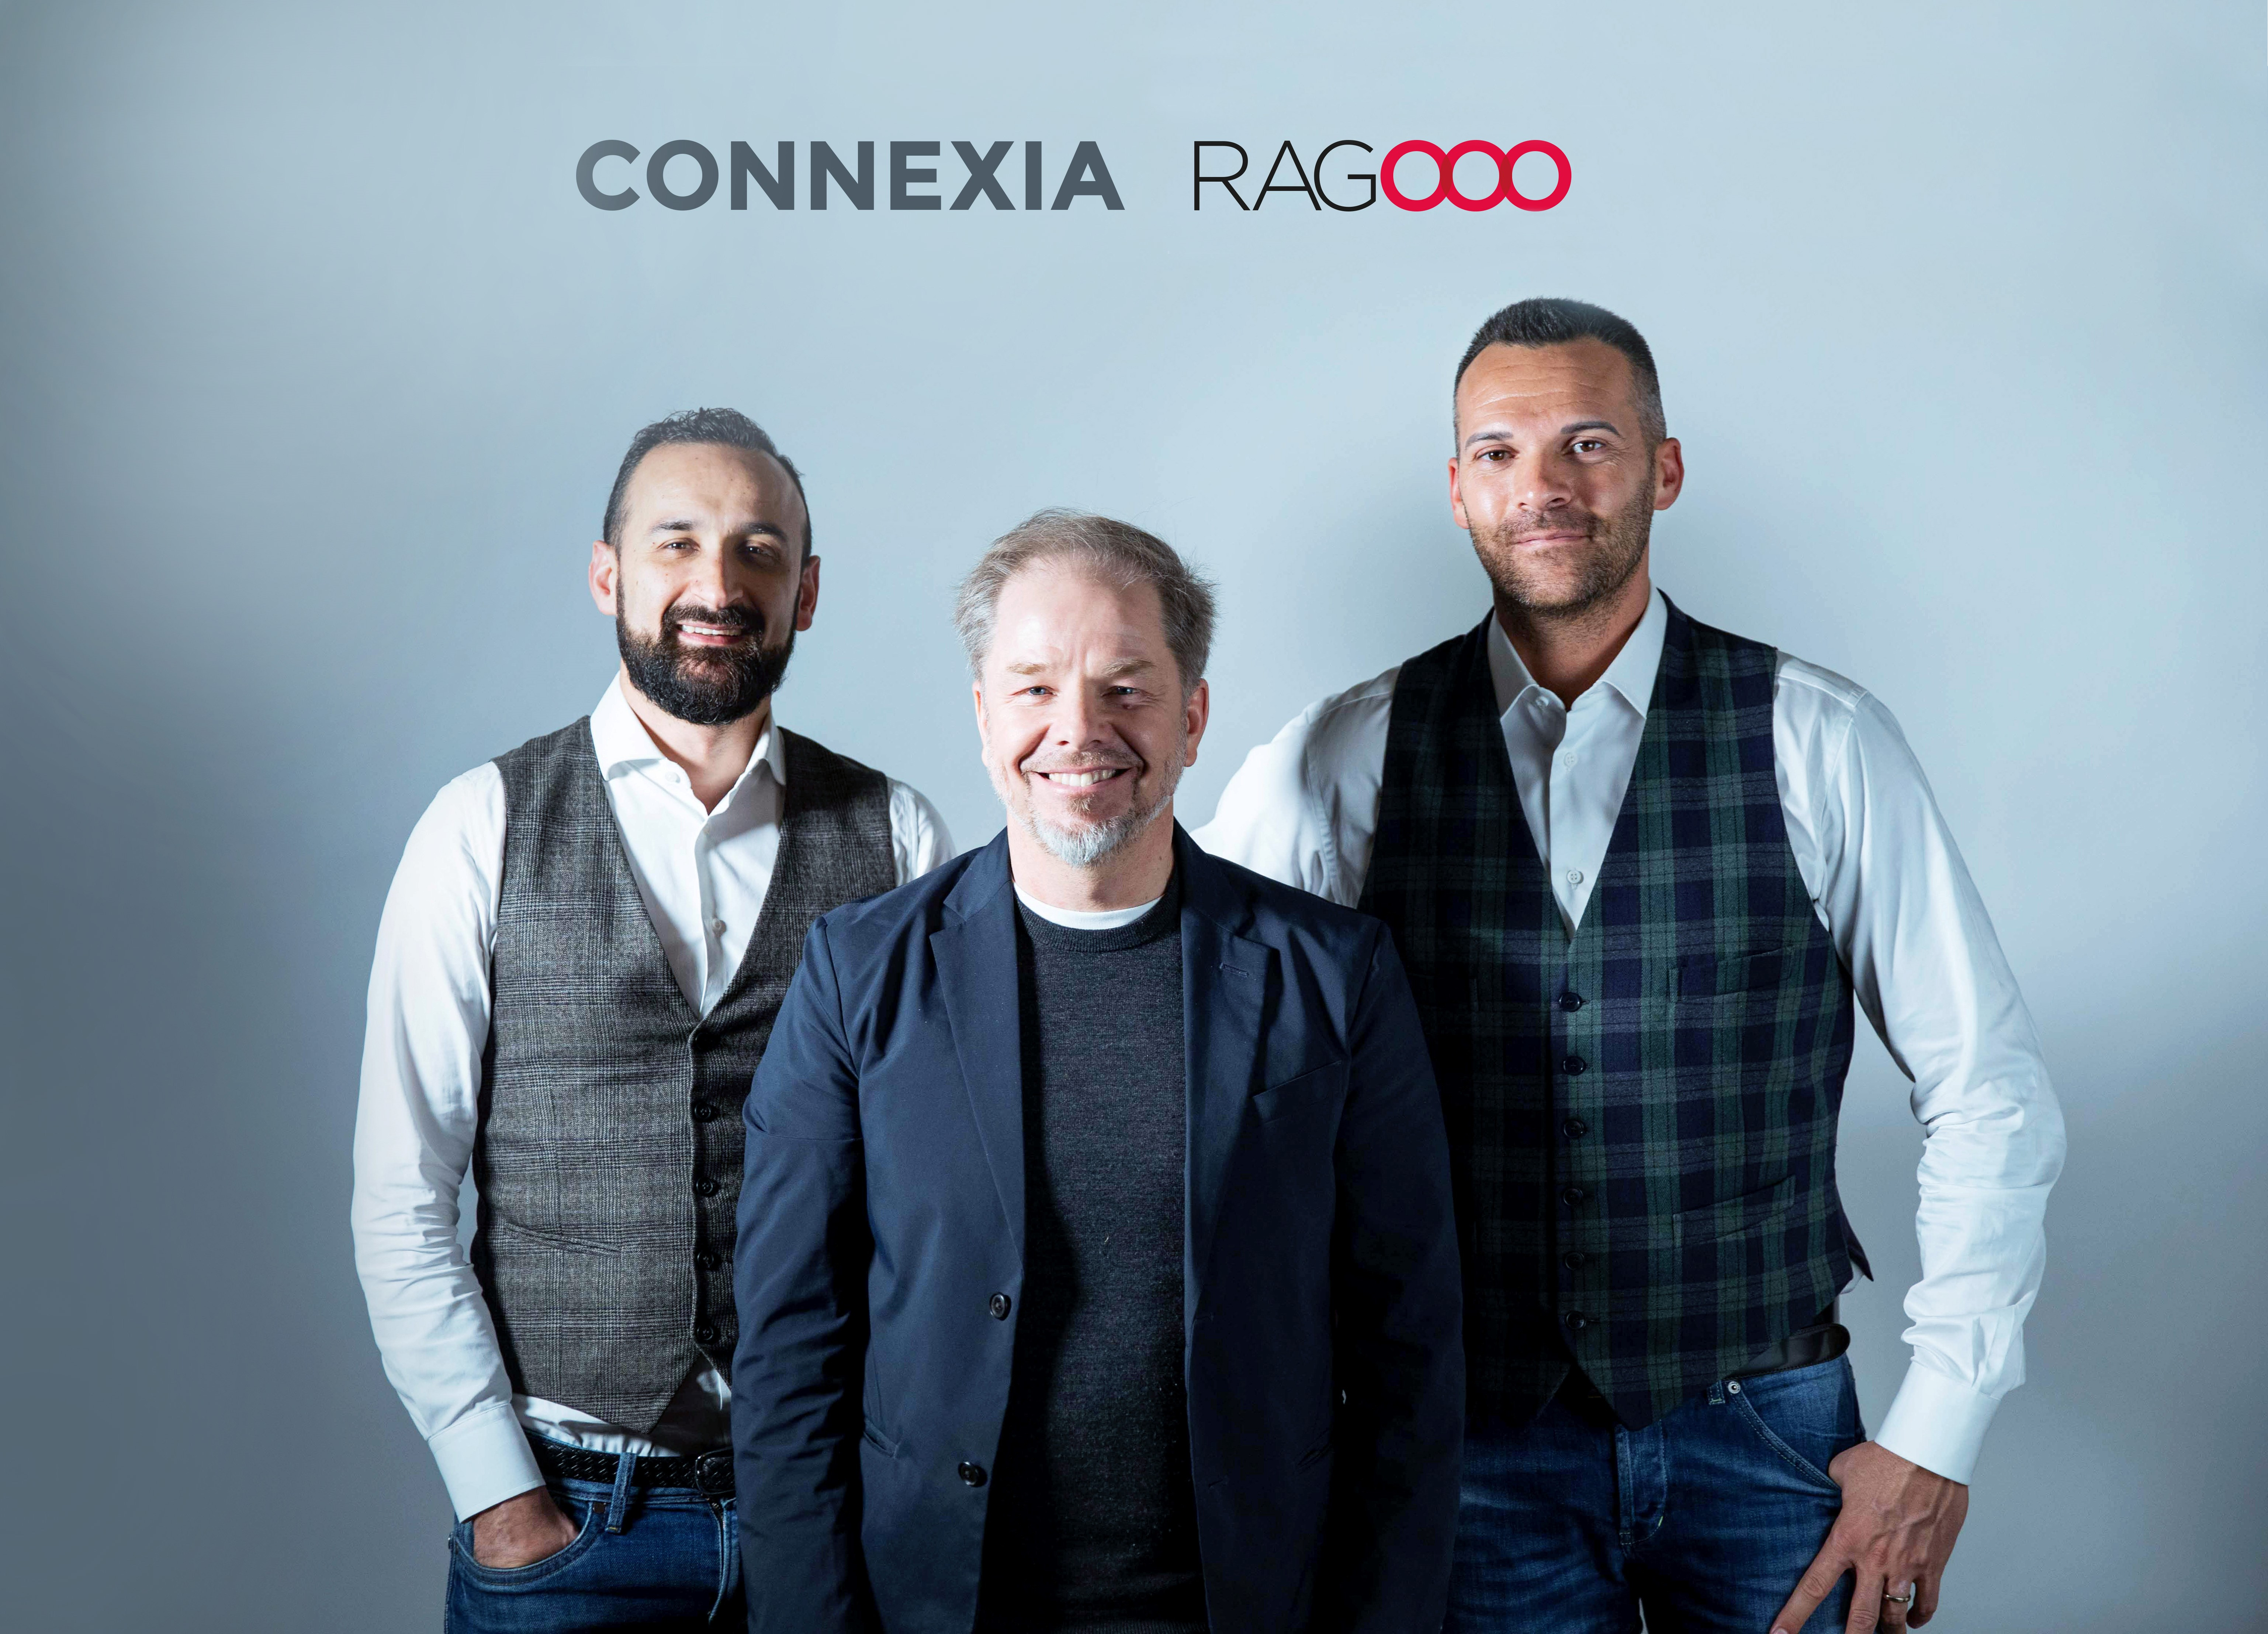 Connexia continua la sua “espansione consapevole” con l’acquisizione del 100% di Ragoo